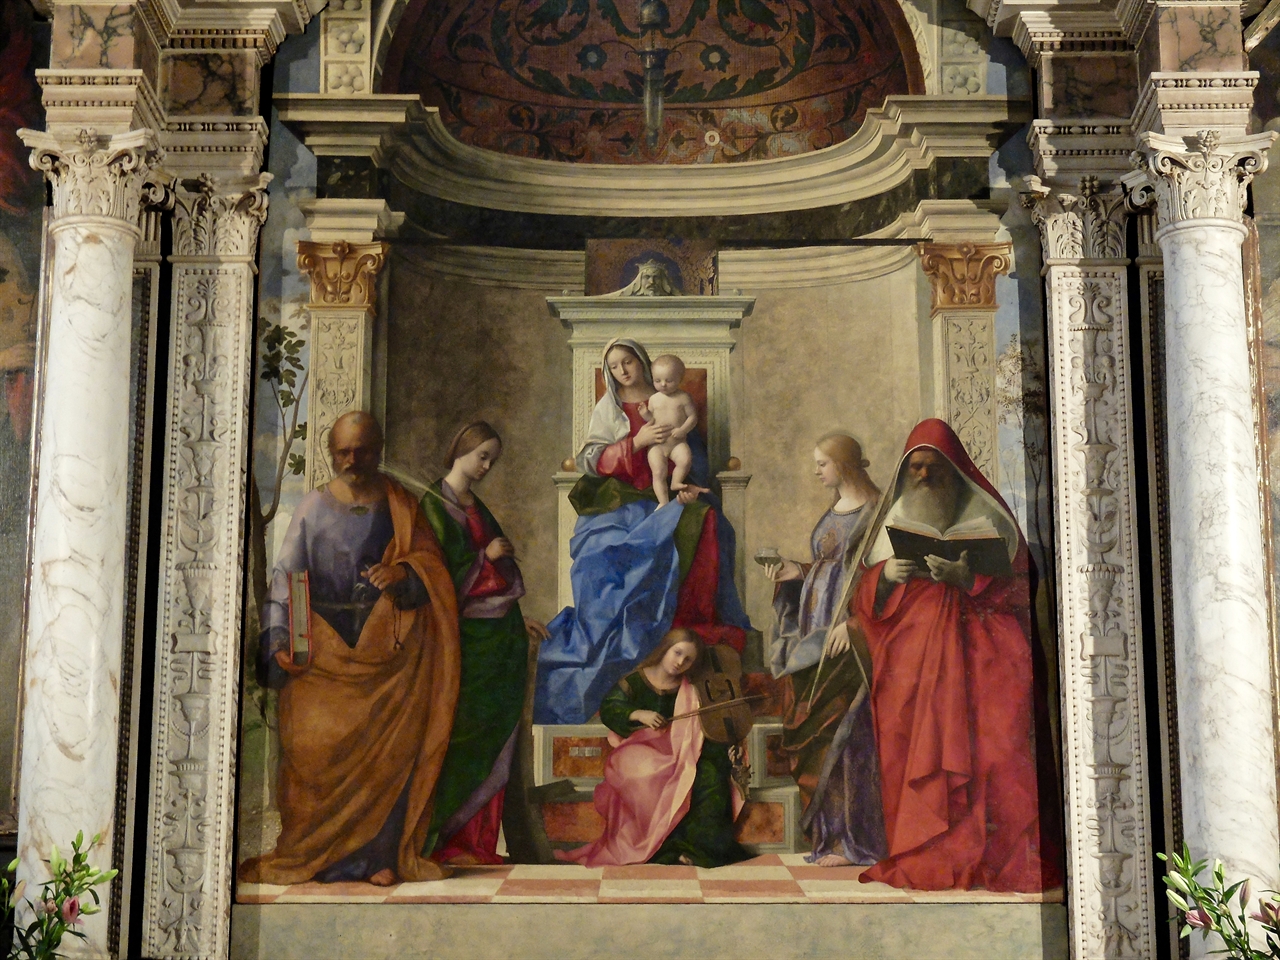 조반니 벨리니, ‘성 모자와 성인들’, 베네치아 산 자카리아 성당. 노년의 조반니 벨리니는 이 그림에 그 스스로 시작했던 베네치아 화파의 여러 양식들을 통합하여 보여줍니다. 
